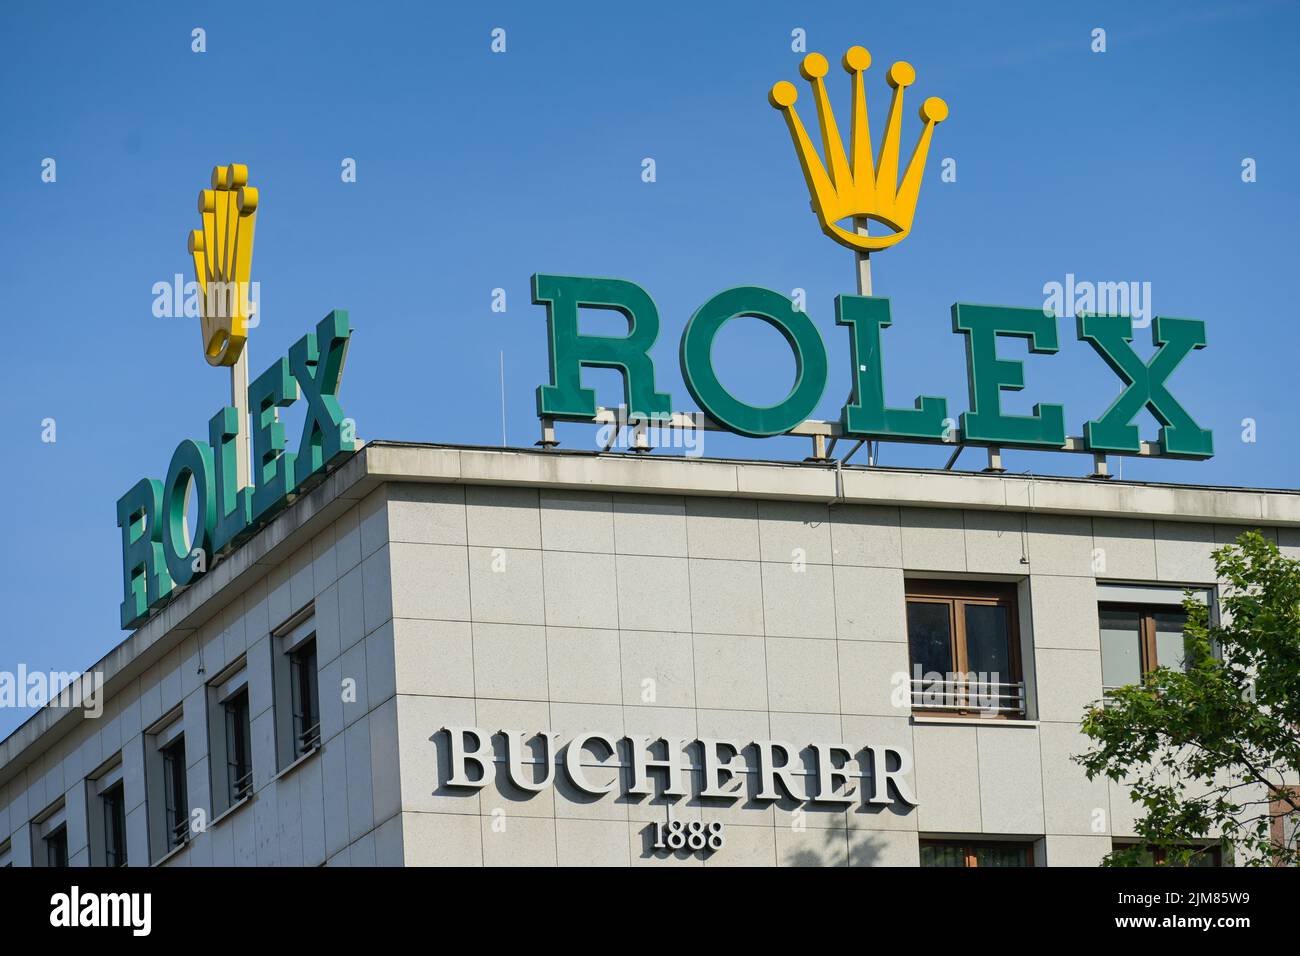 Werbung Rolex Uhren, Roßmarkt, Frankfurt am Main, Hessen, Deutschland Stock Photo